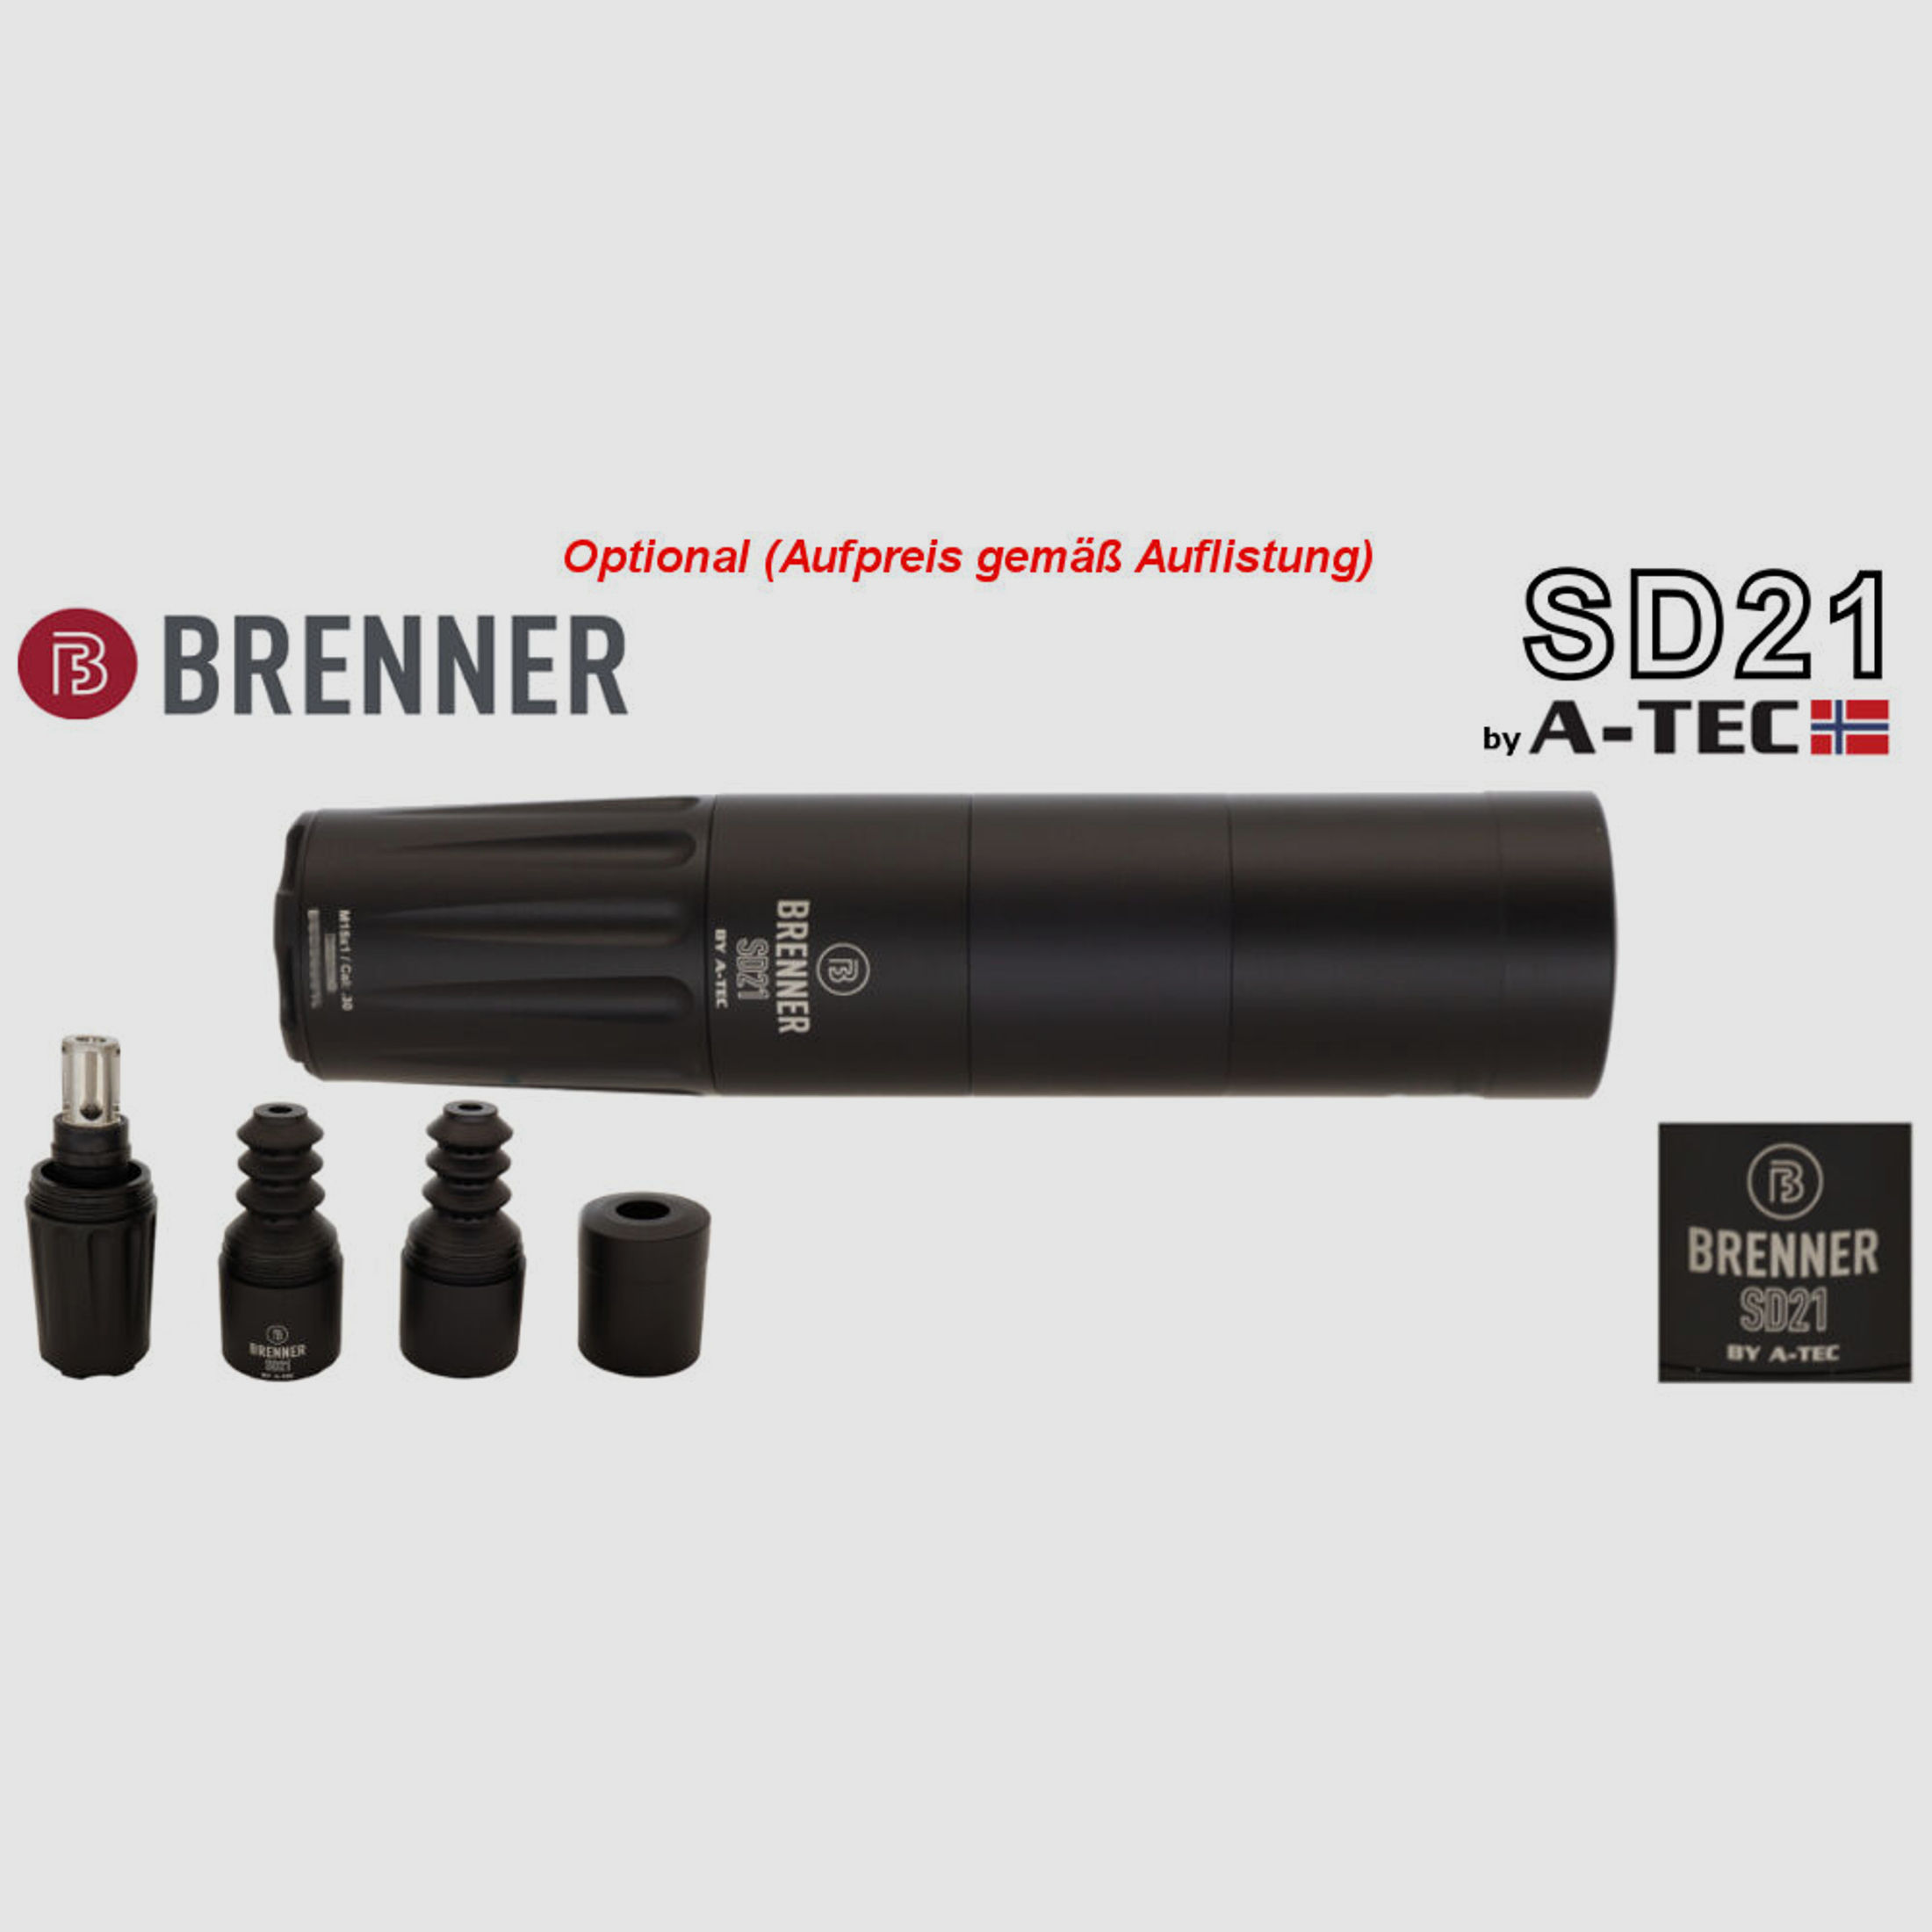 Bergara	 B14 B&H Prohunter LINKS Lochschaft Endurance 3-12x56 fertig montiert / Optional: Brenner Schalldämpfer